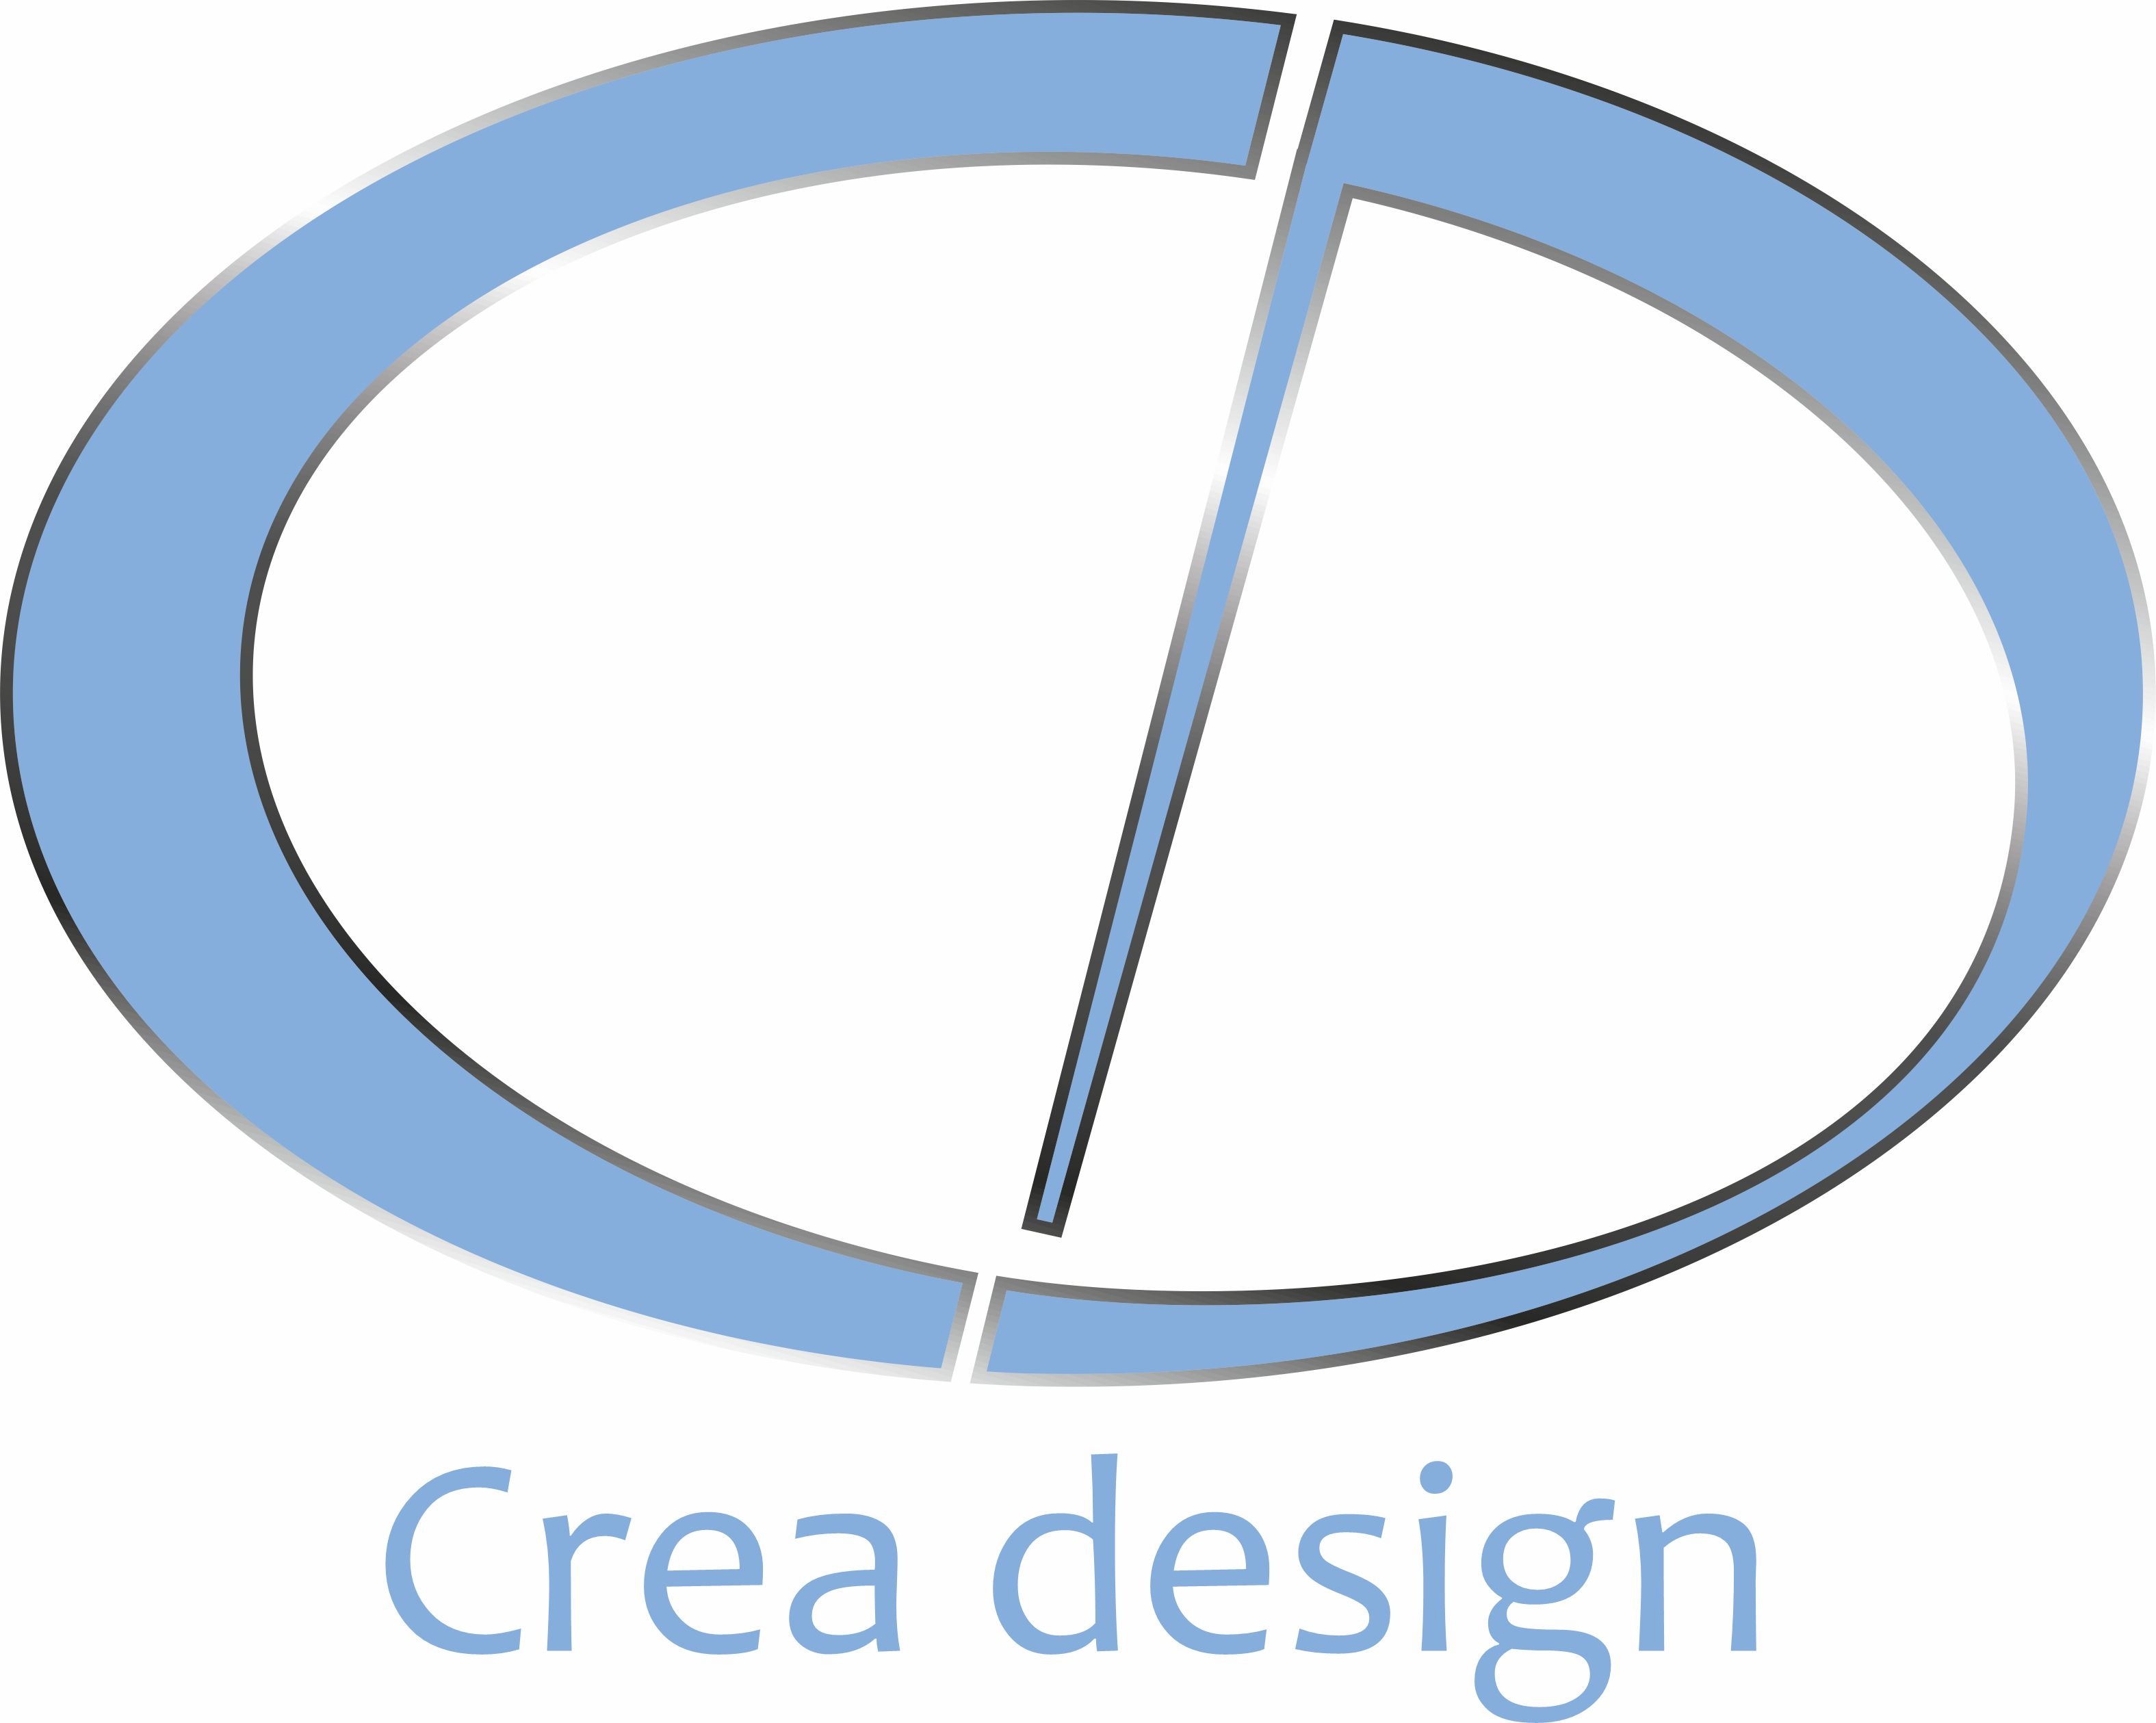 Crea design